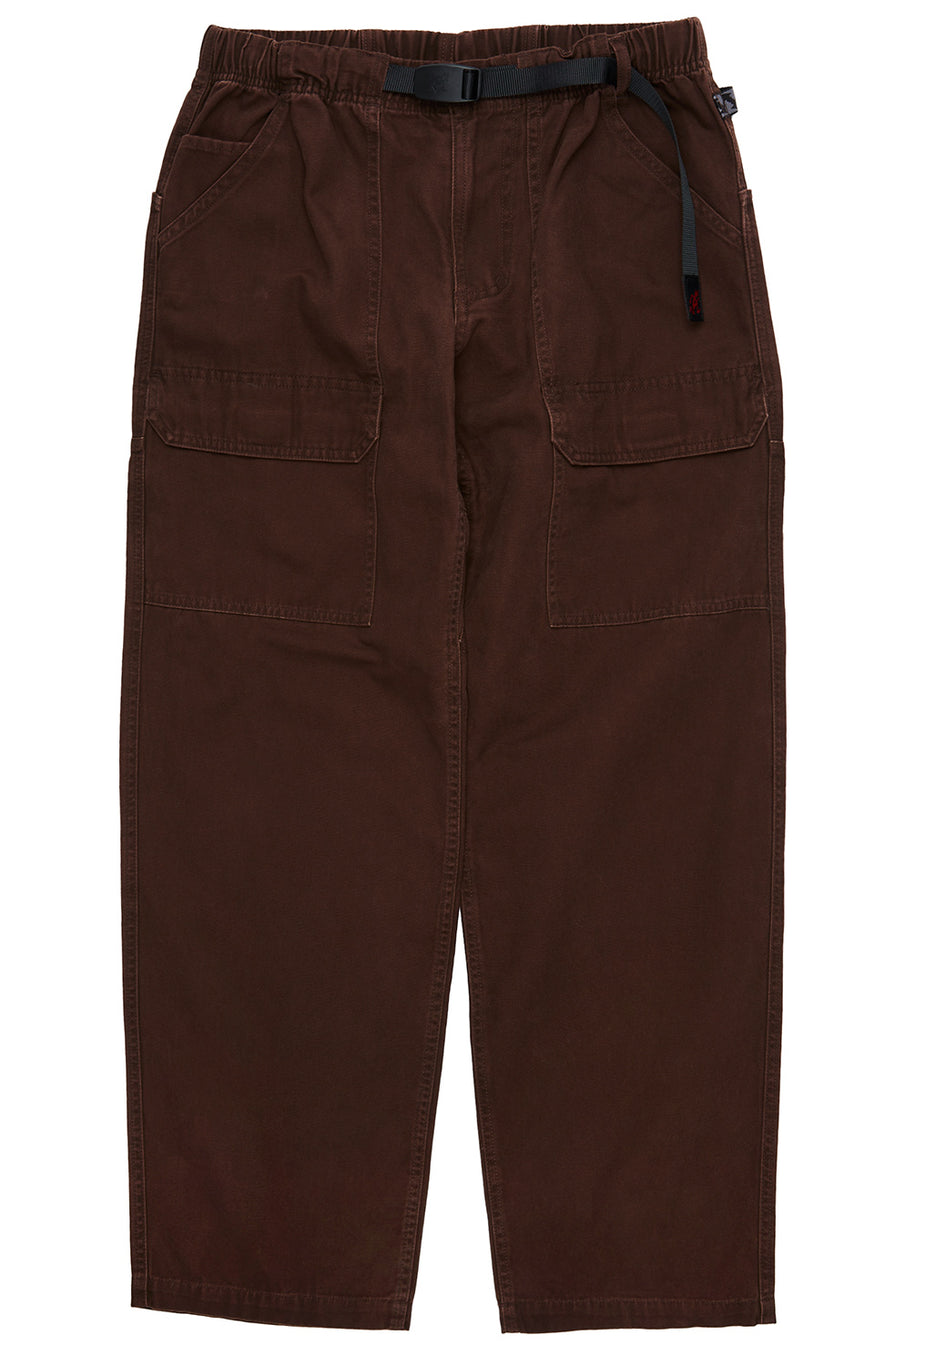 Gramicci Men's Canvas EQT Pants - Dark Brown